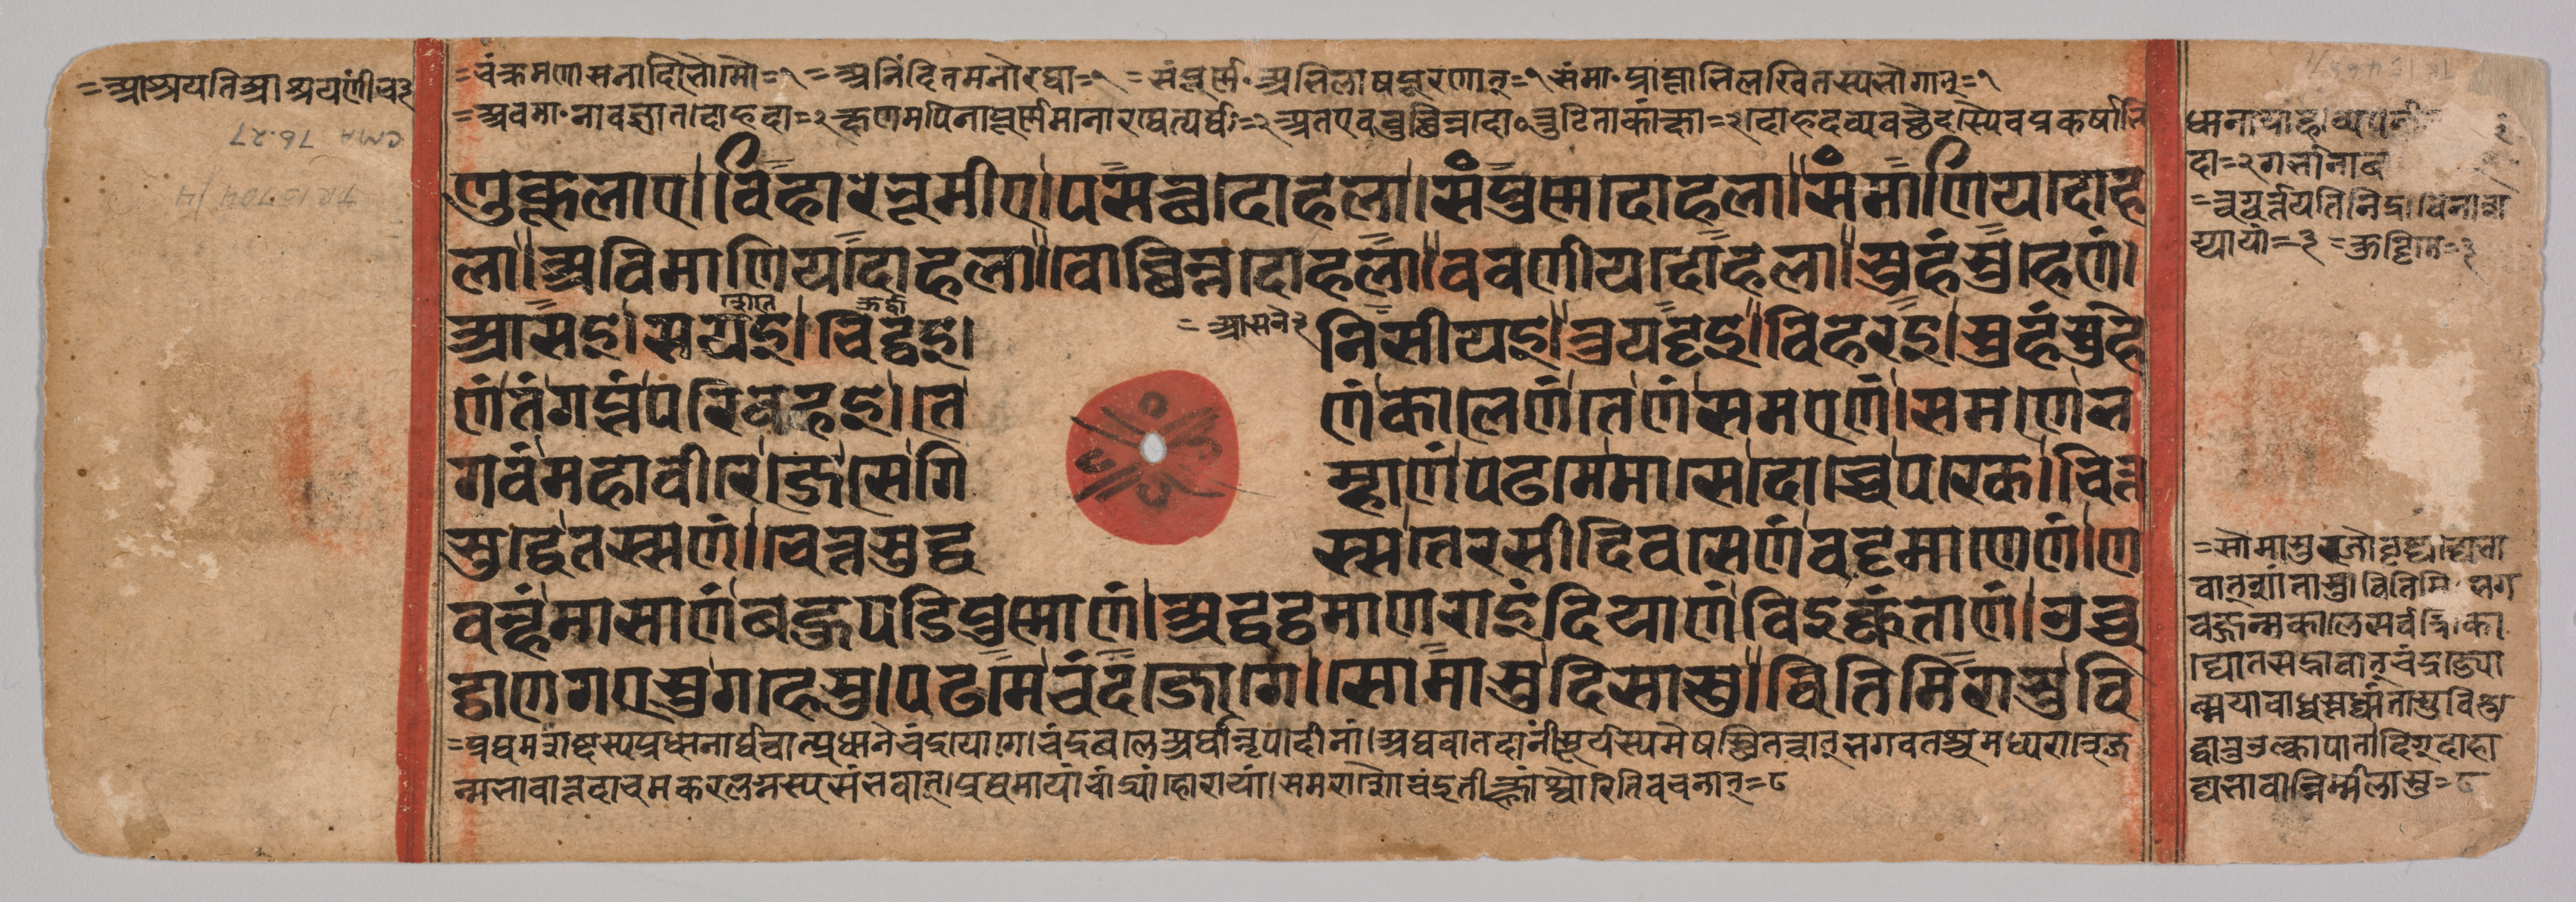 Text describing the pregnancy of Queen Trishala, folio 40 (recto) from a Kalpa-sutra